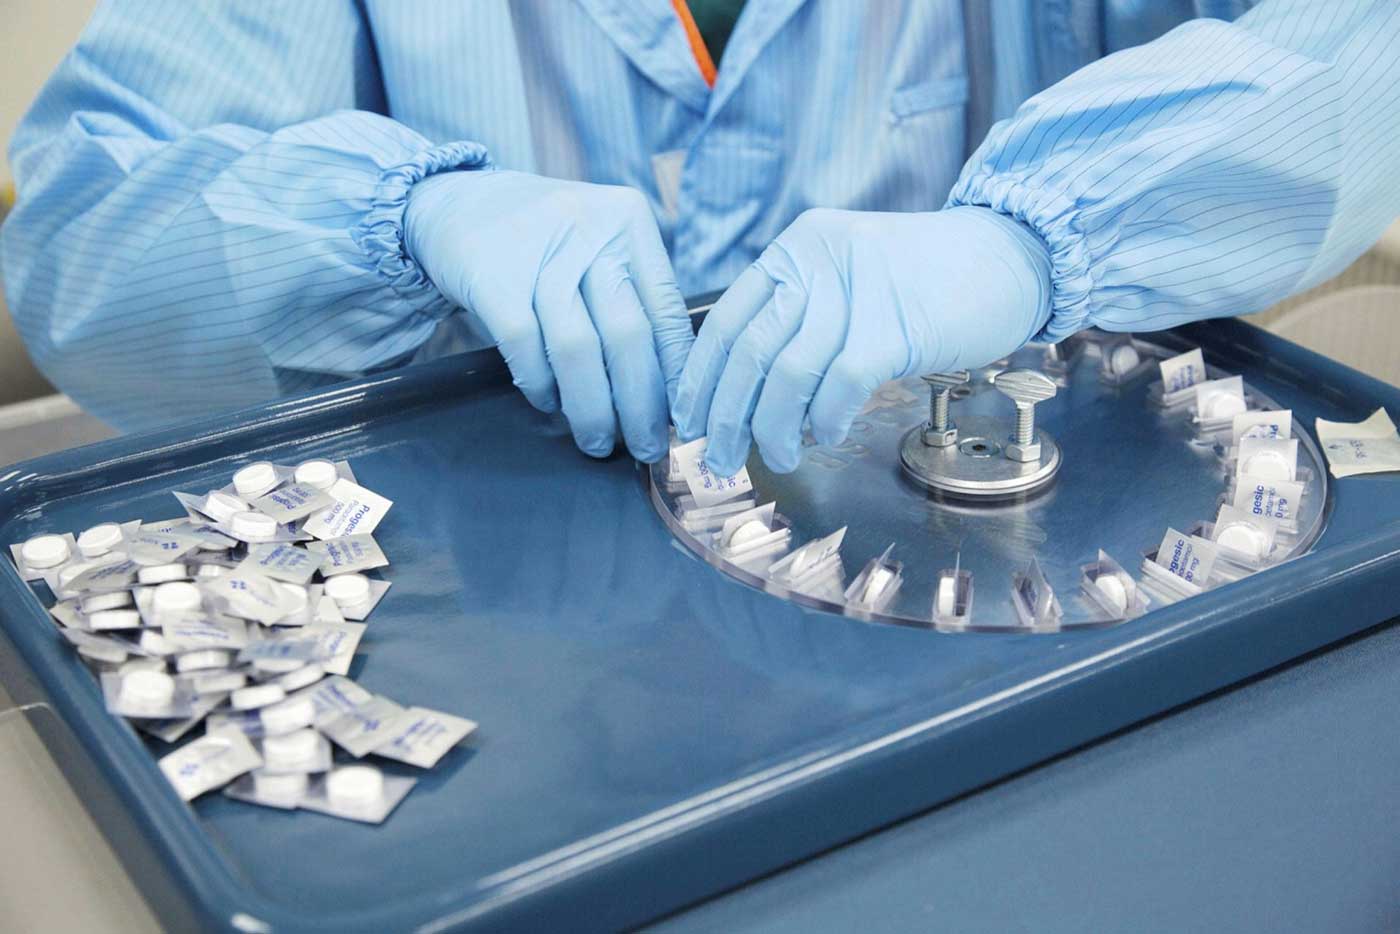 Процесс упаковки таблеток парацетамола в лаборатории в Сингапуре. Всплеск госпитализации больных Covid и последовавшее за этим ограничение продажи более простых лекарств, показало, как мало правительства знали о цепочках поставок медицинских товаров.